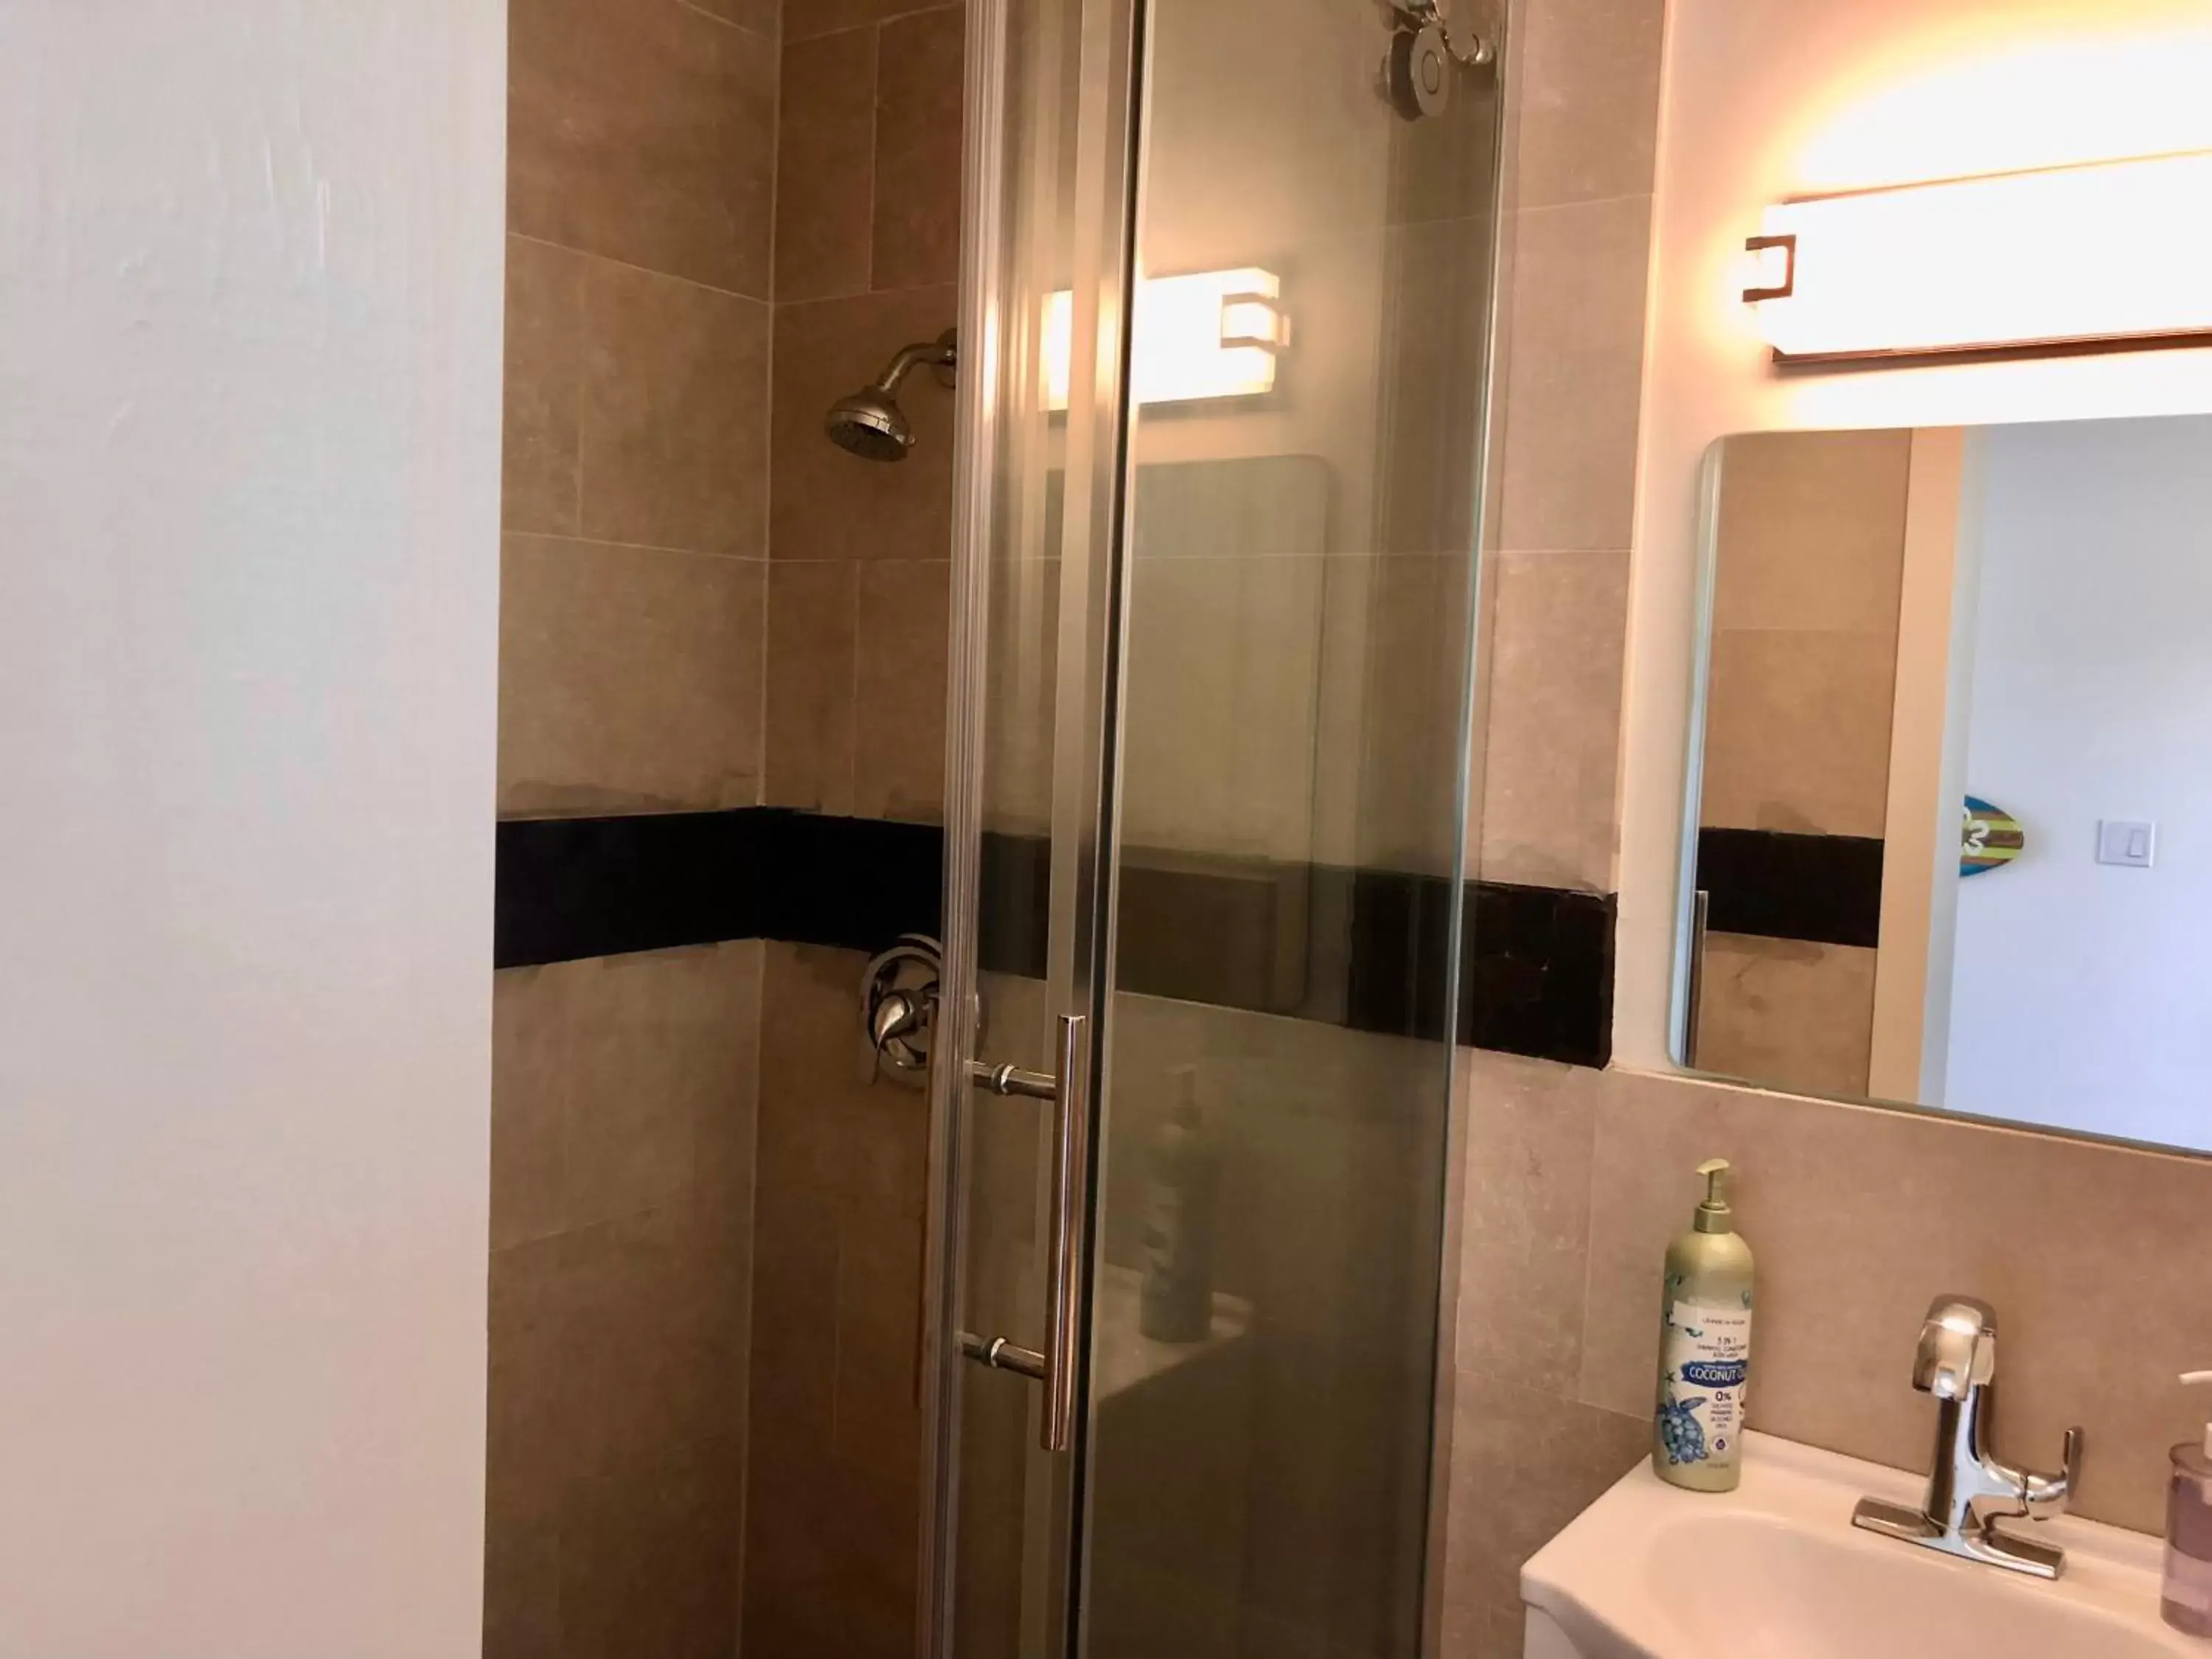 Bathroom in Kona Tiki Hotel